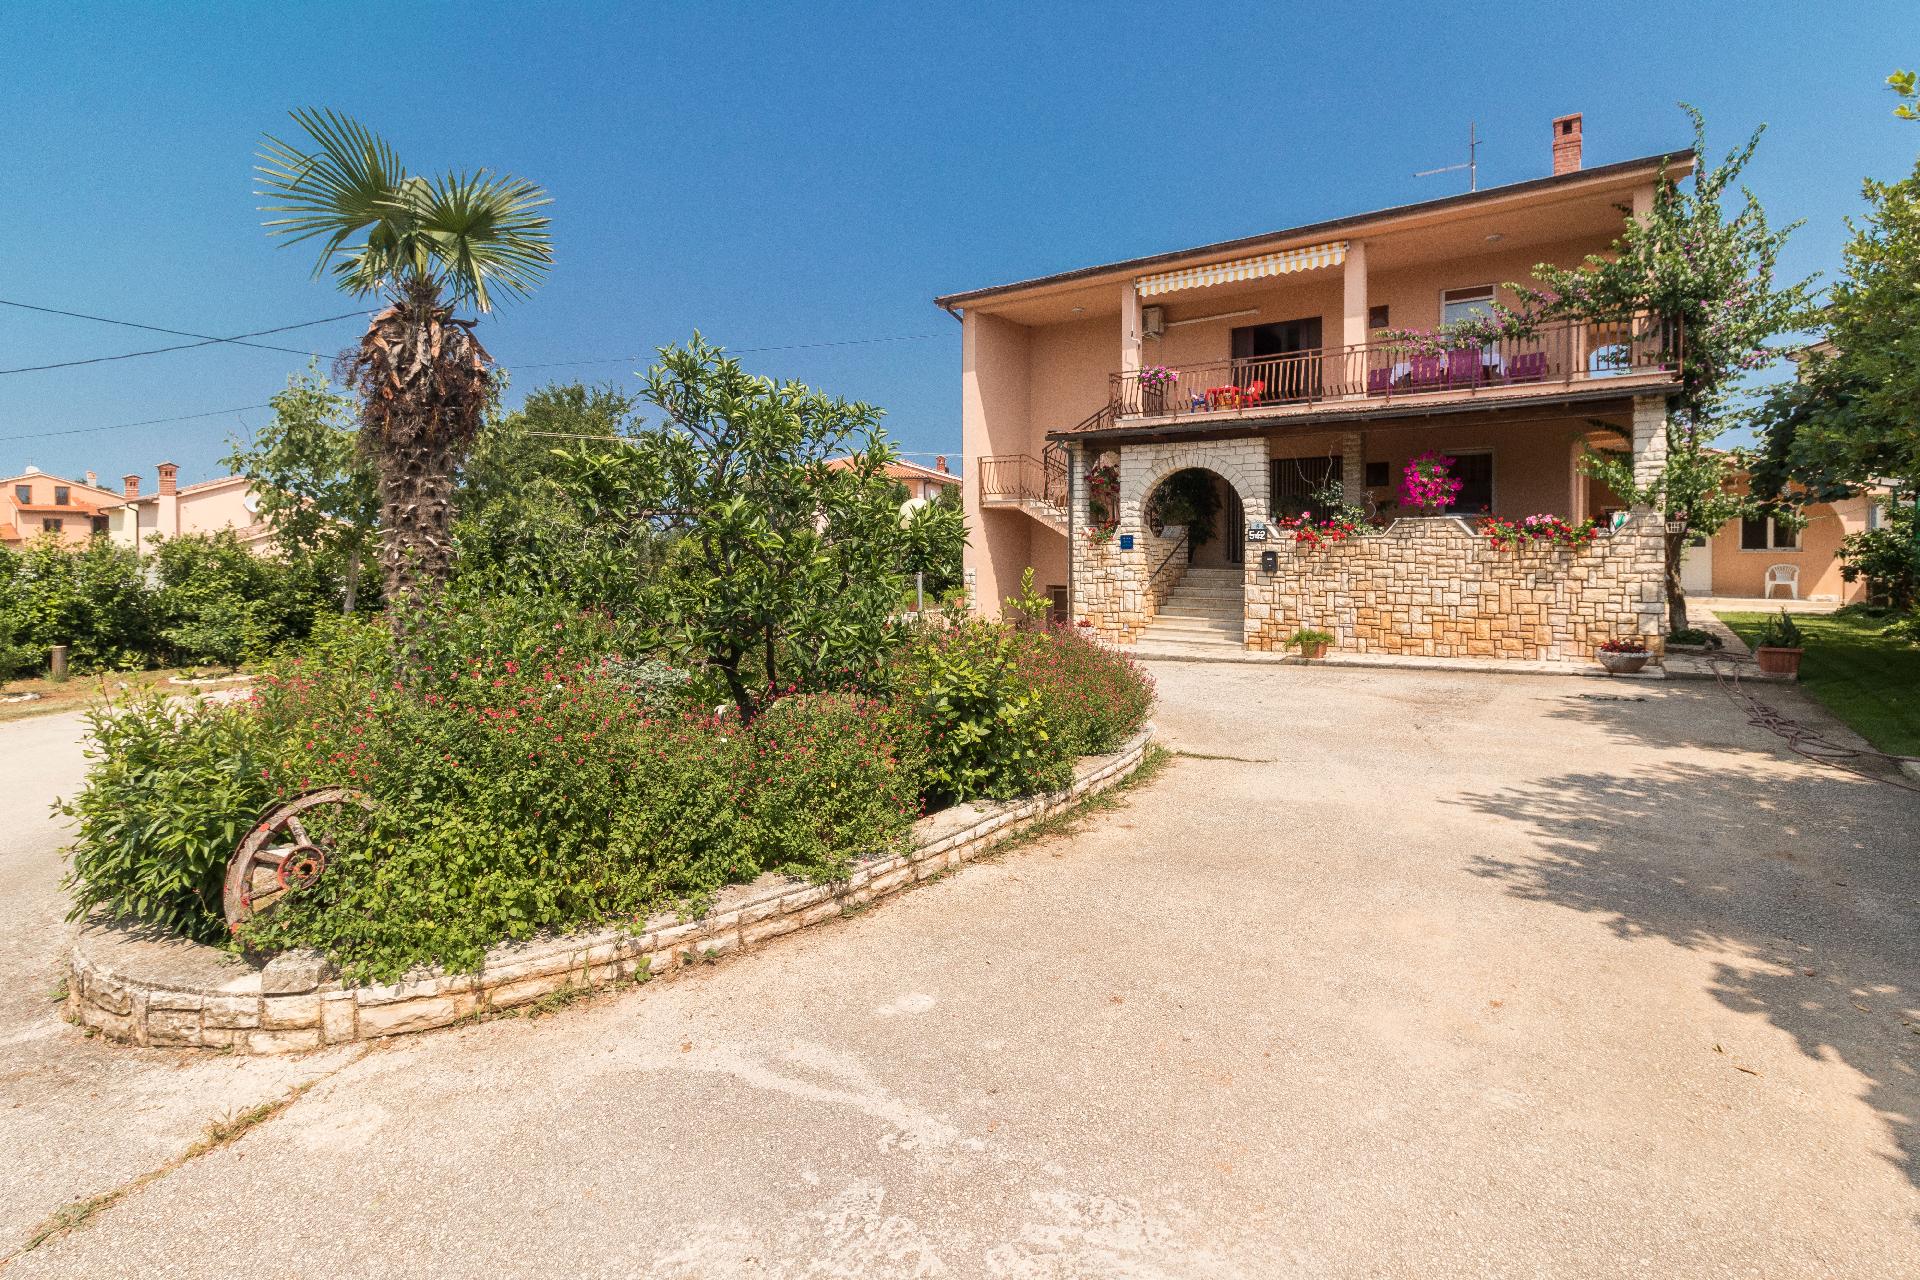 Ferienwohnung für 6 Personen ca. 46 m² i  in Istrien